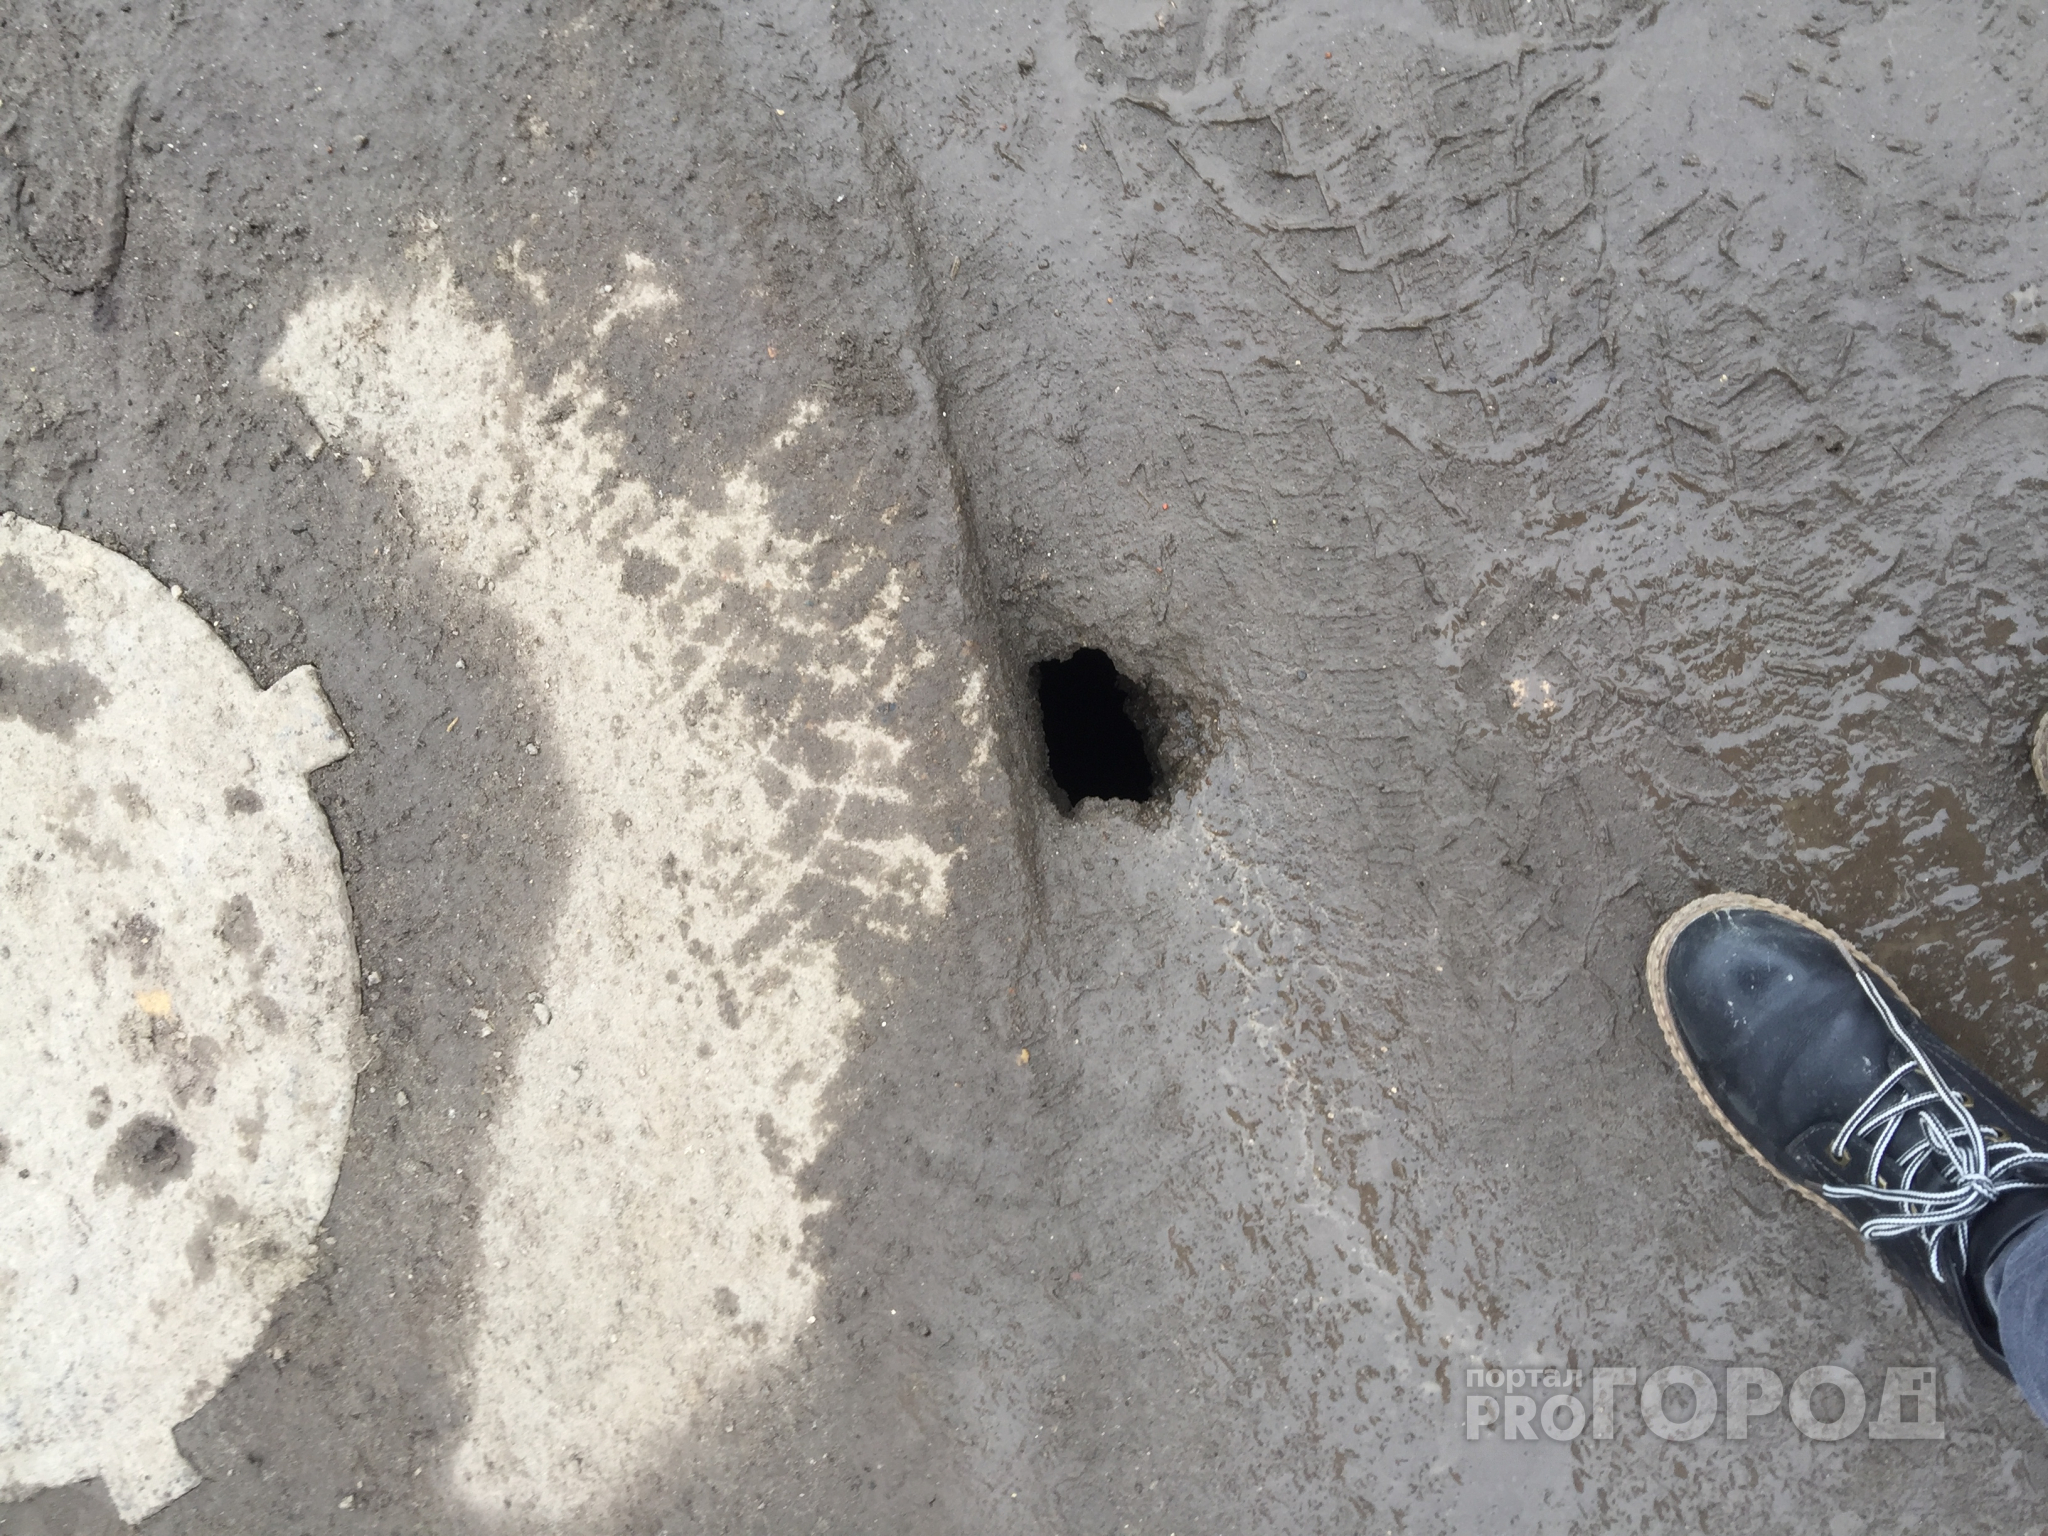 Йошкаролинка наткнулась на яму в асфальте глубиной два метра